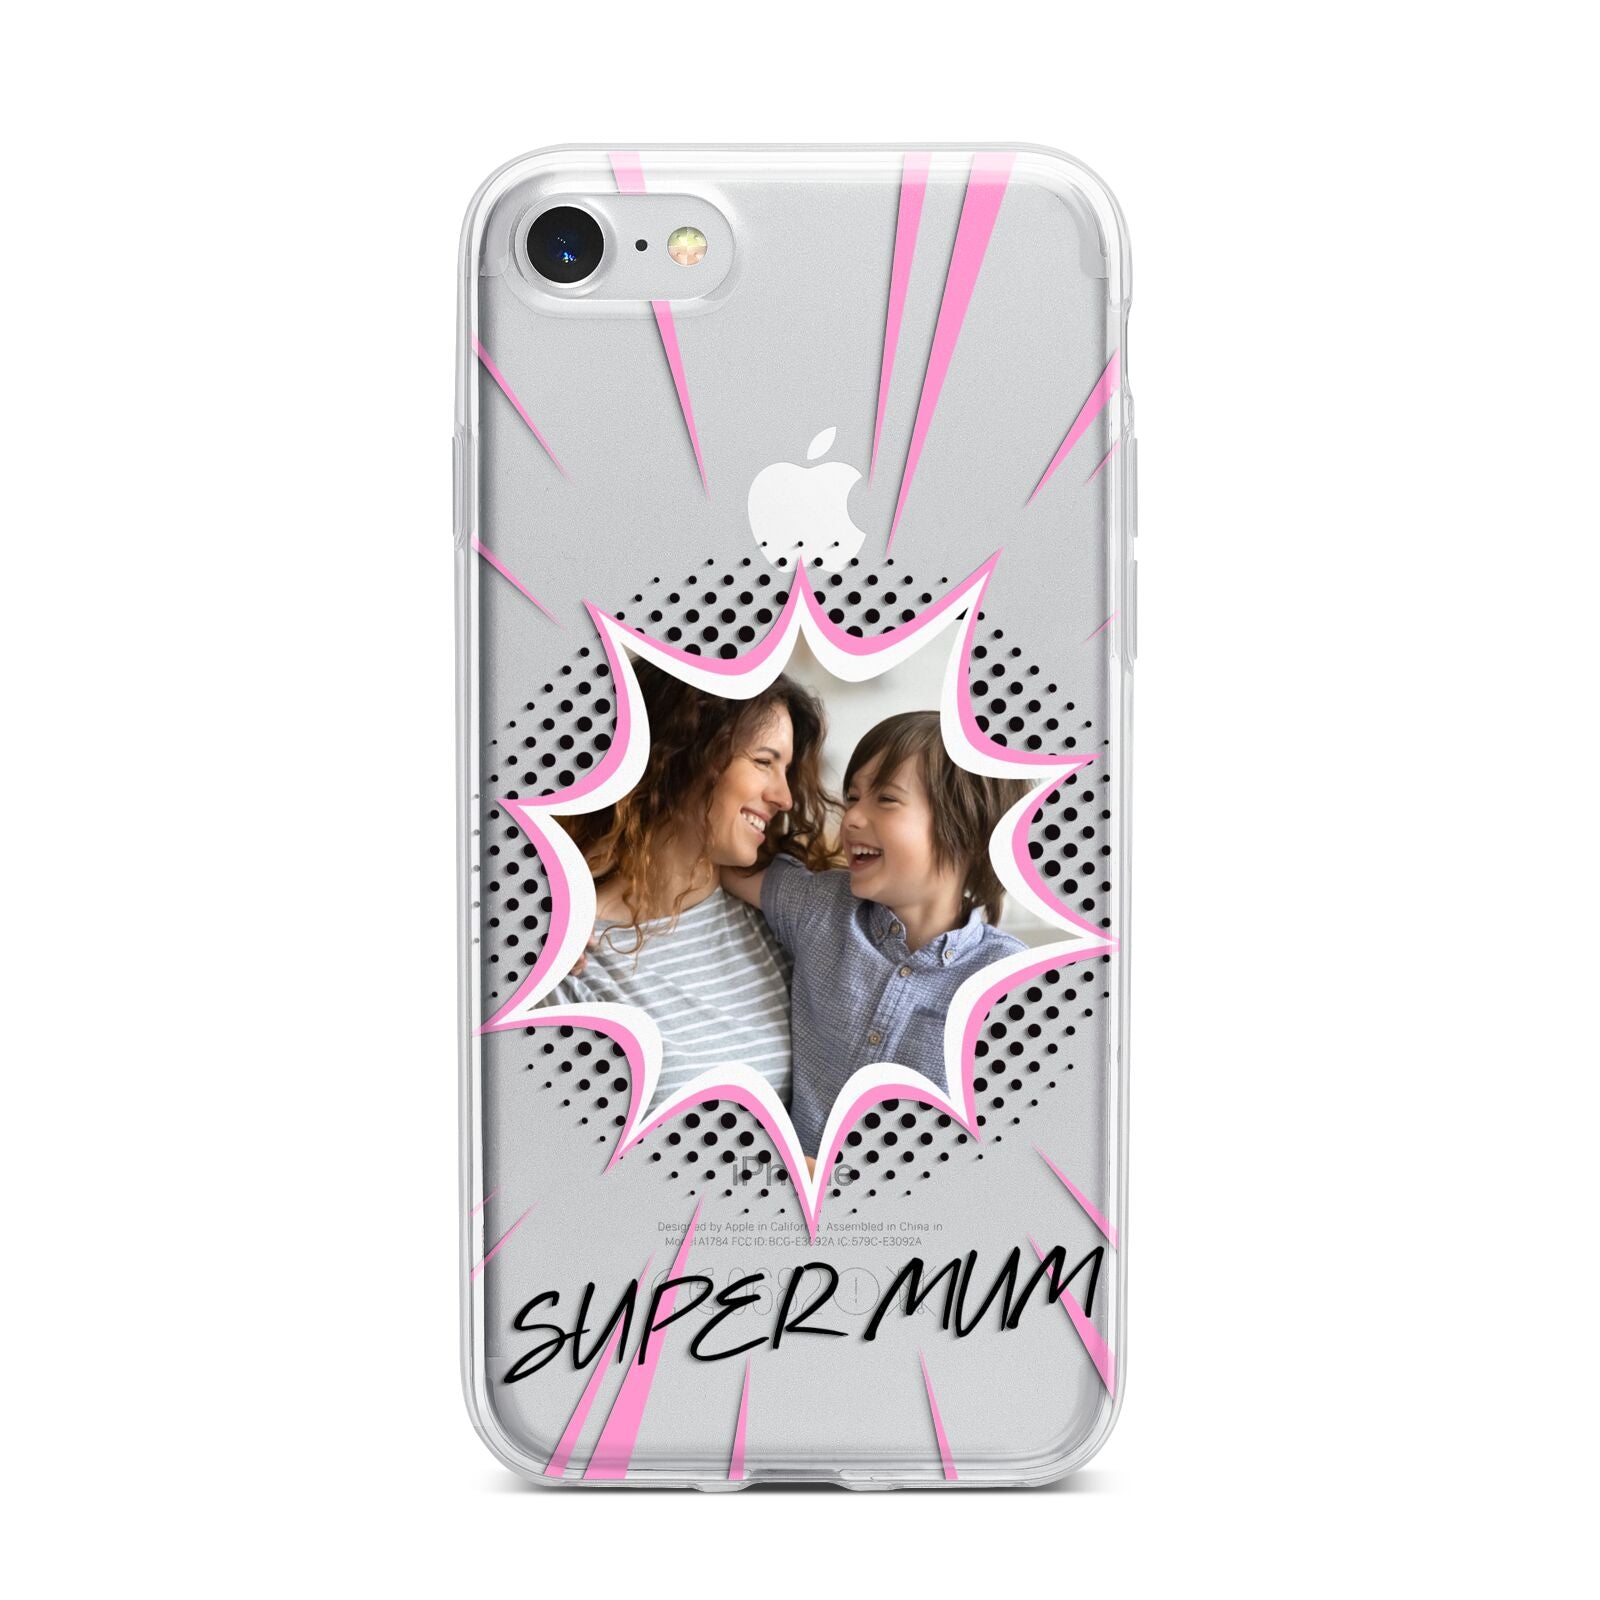 Super Mum Photo iPhone 7 Bumper Case on Silver iPhone